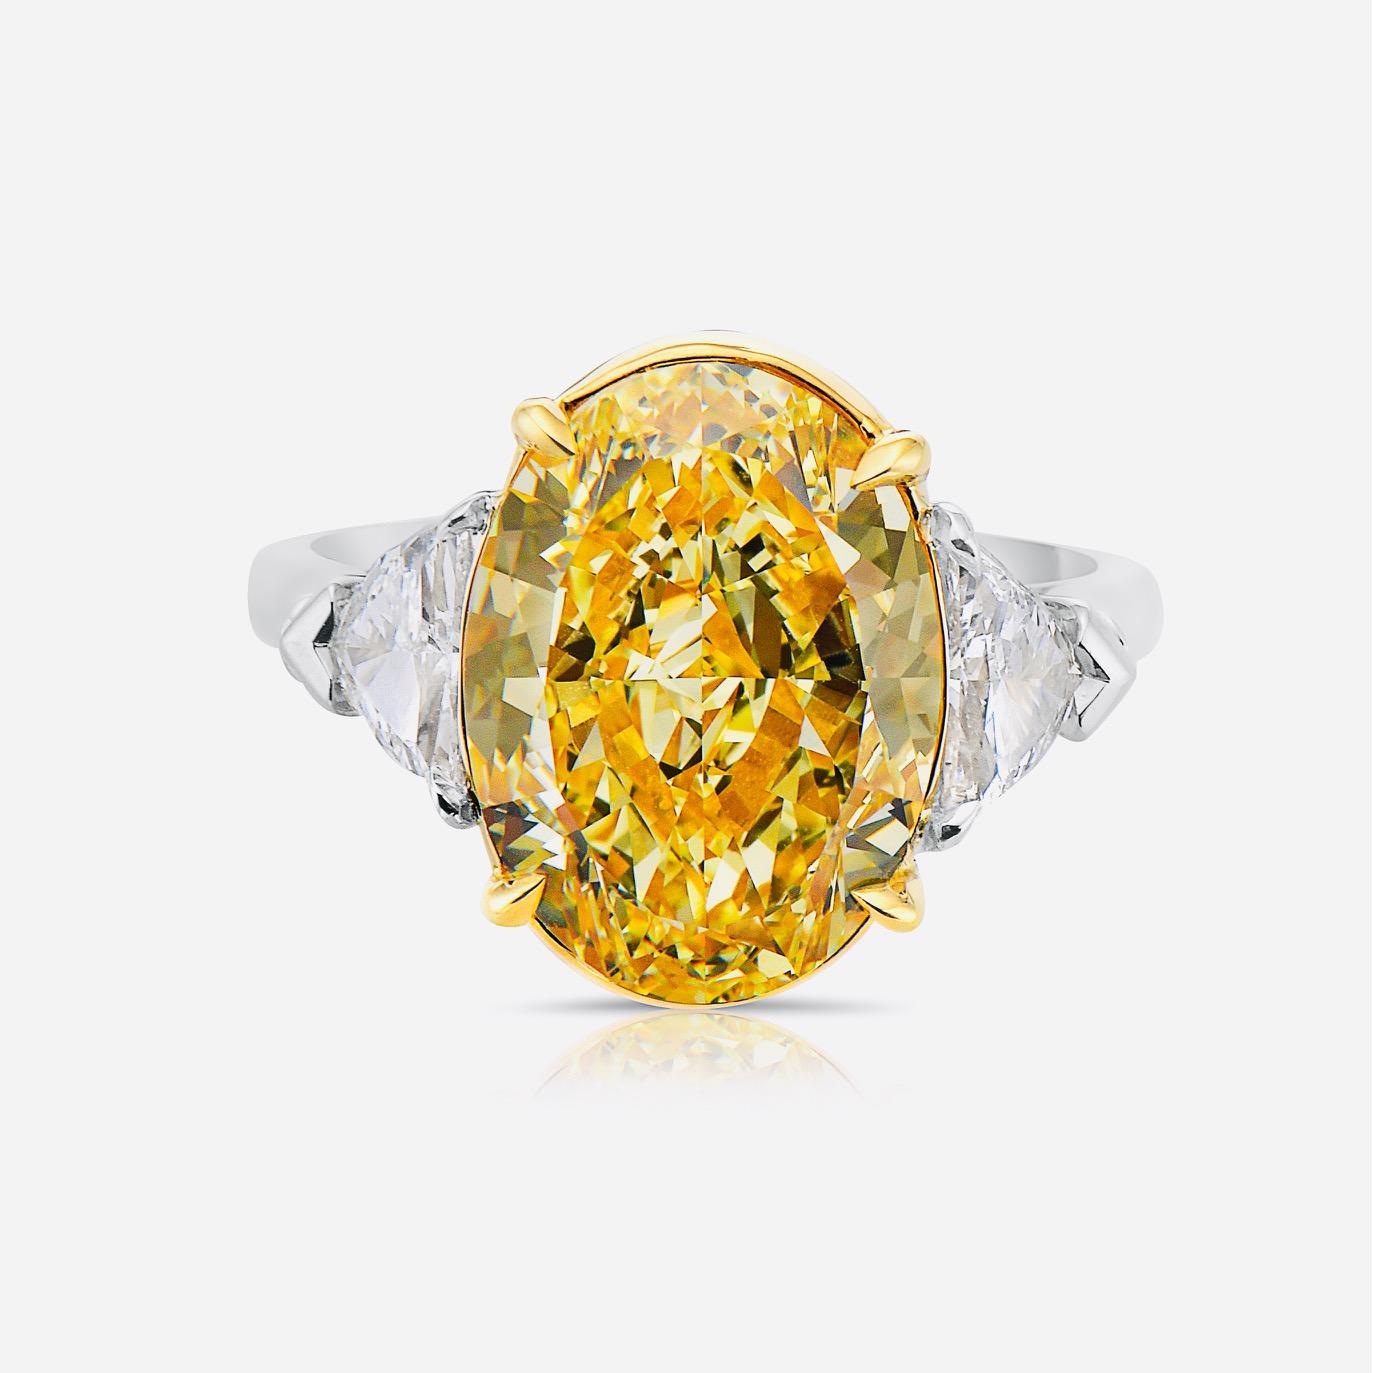 Aus dem Tresor von Emilio Jewelry auf der berühmten New Yorker Fifth Avenue,
Mit einem ganz besonderen und seltenen GIA-zertifizierten, natürlichen, intensiv gelben ovalen Diamanten in der Mitte. Spektakulärer Ring! Das Gesamtgewicht ist im Titel